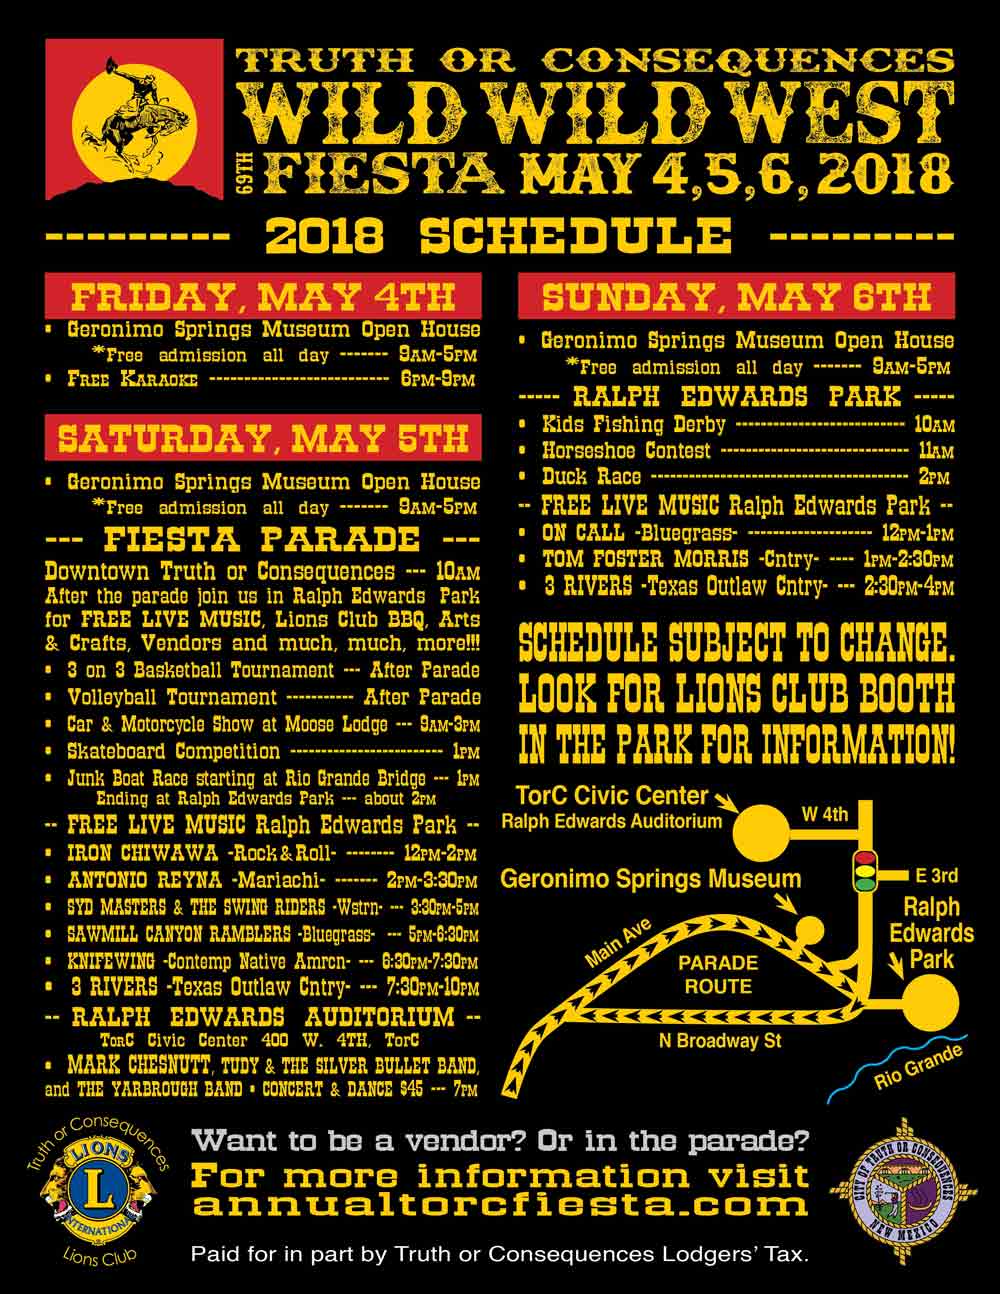 2018: Wild Wild West Fiesta